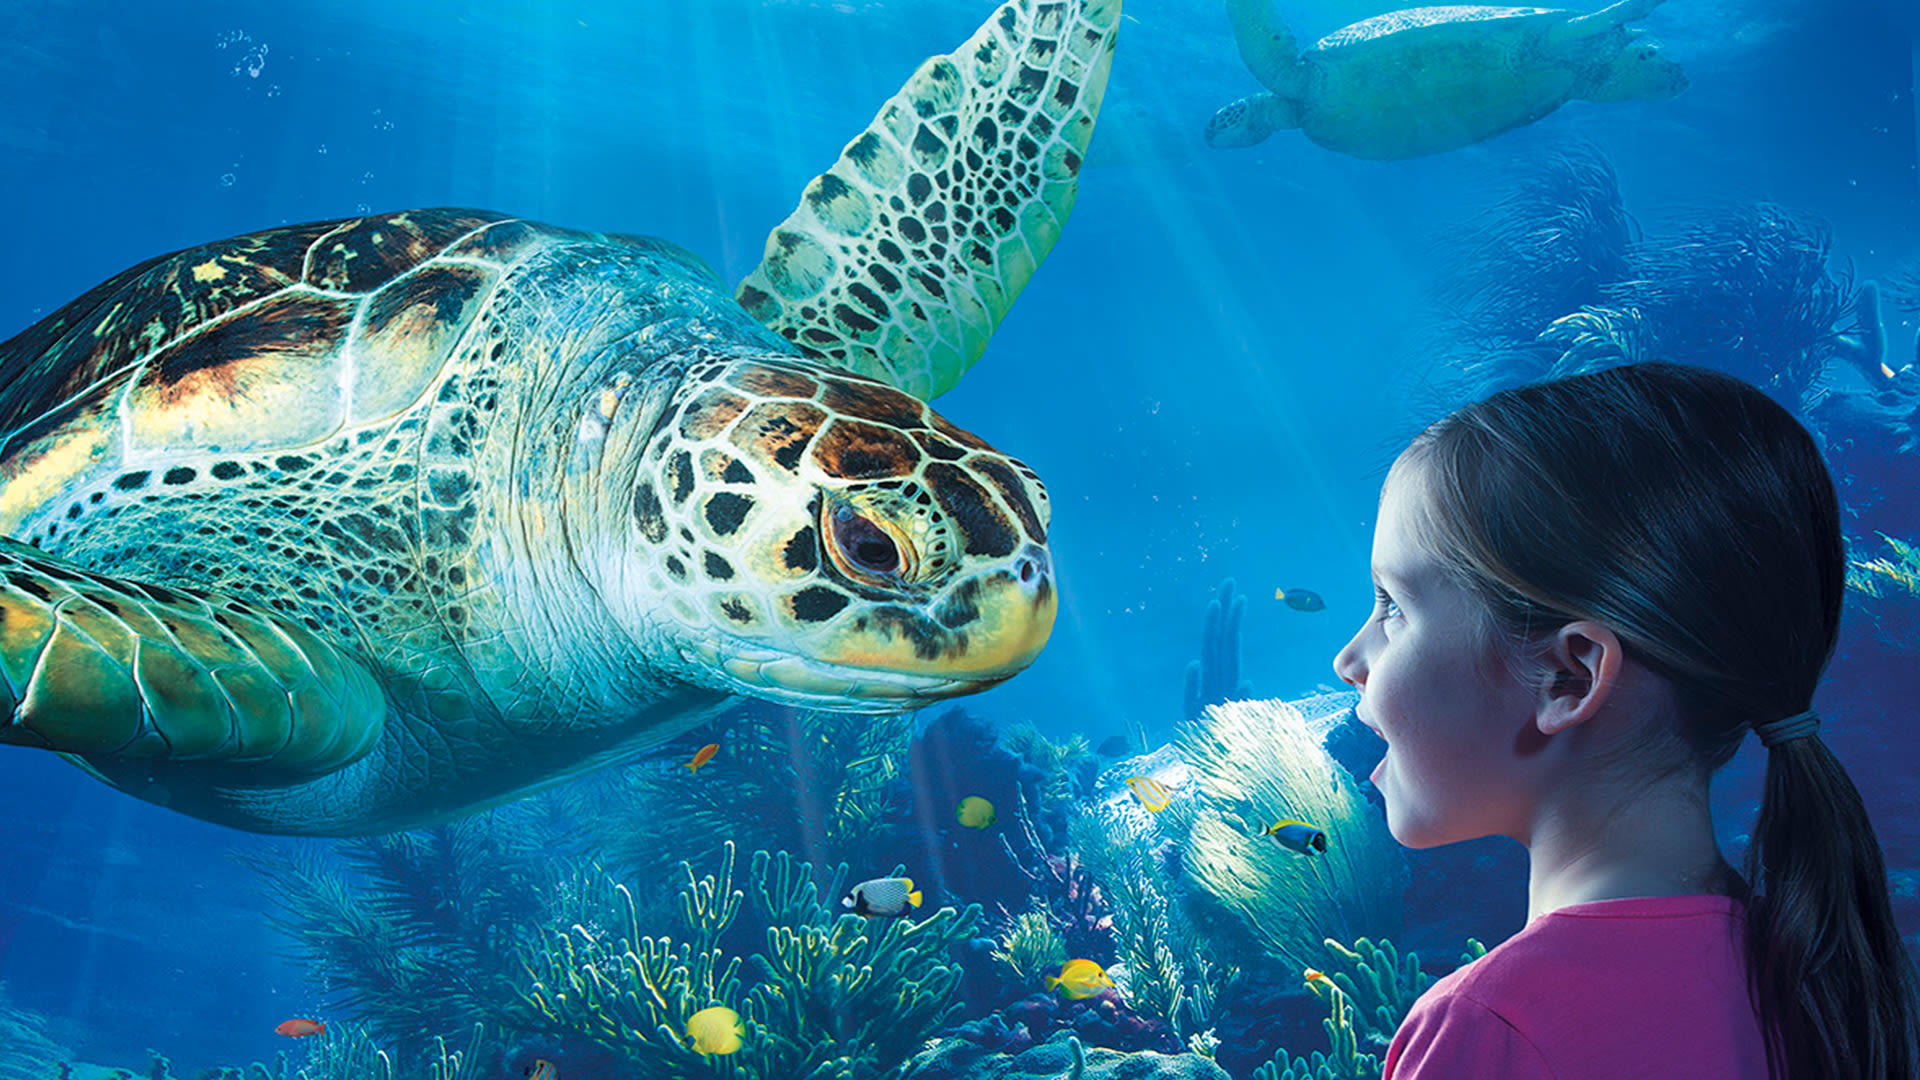 Aquarium Sea Life Attraction Image